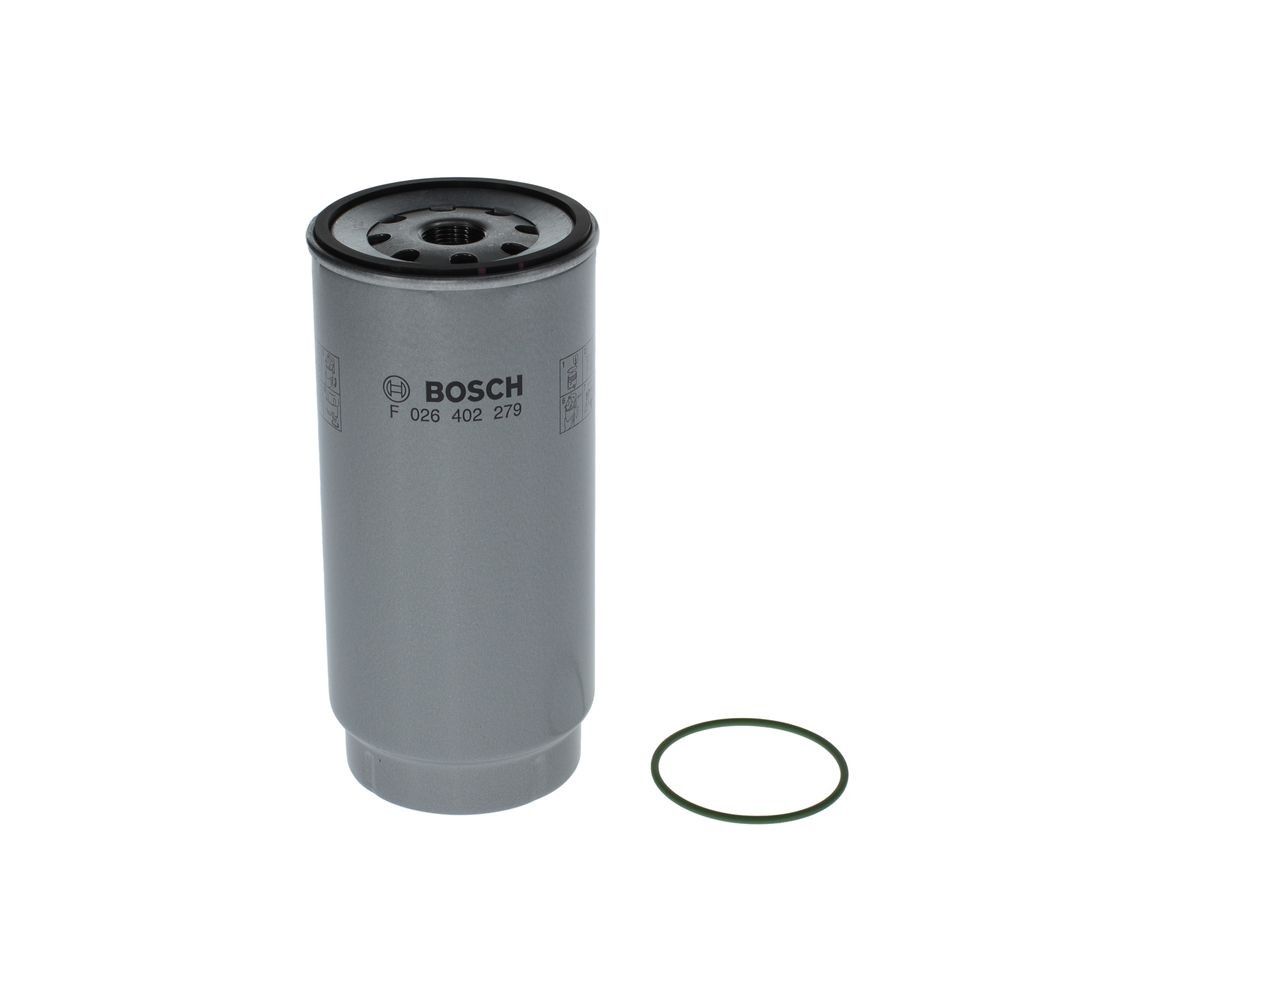 BOSCH Fuel filter F 026 402 279